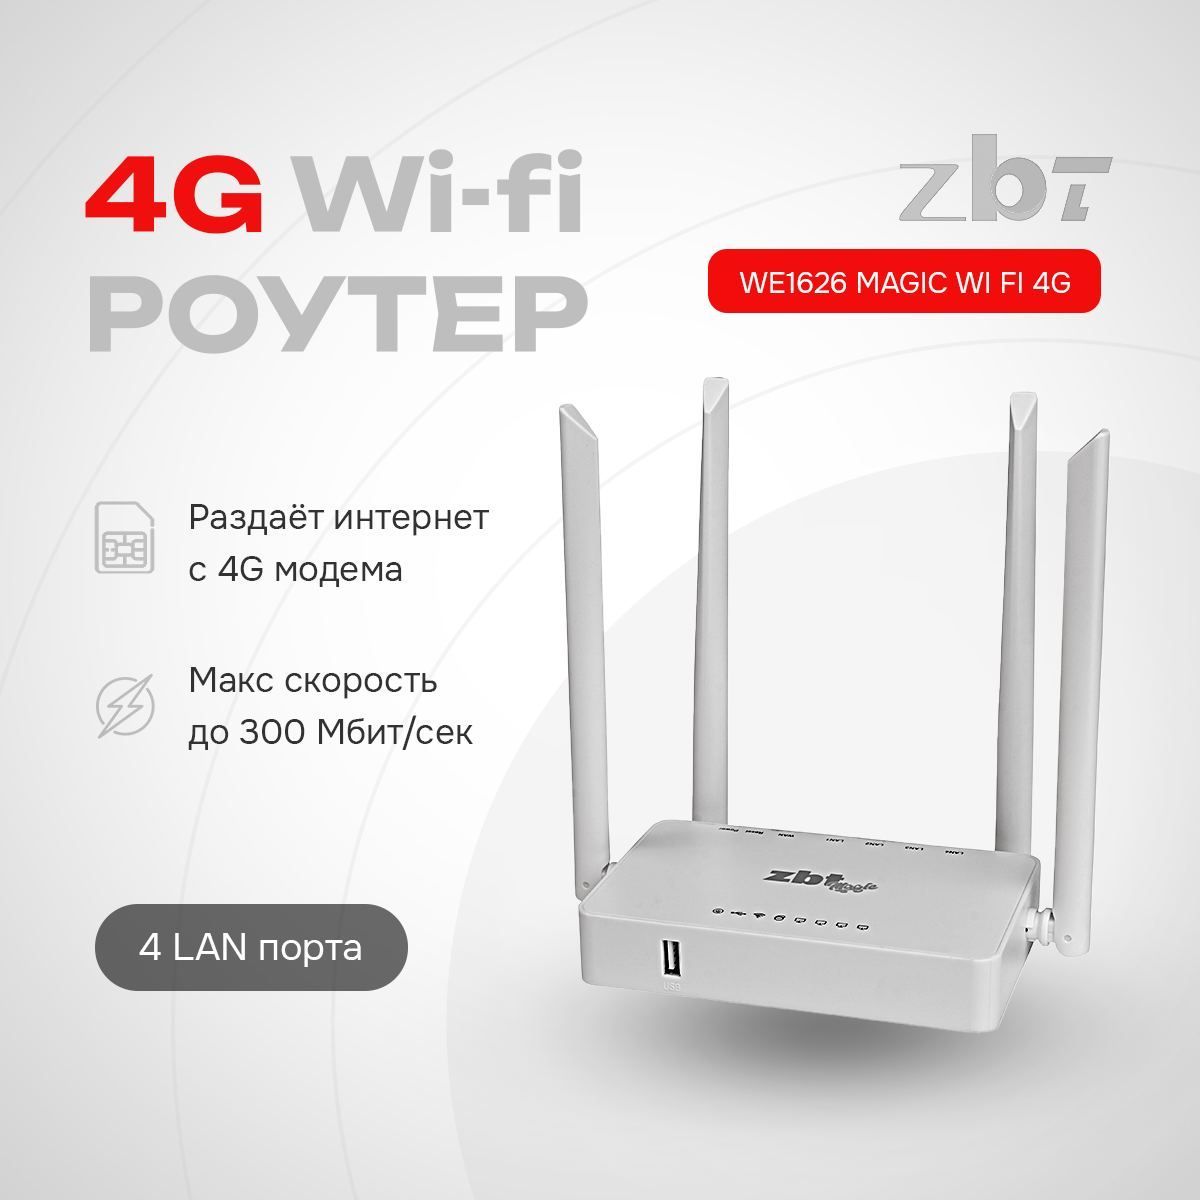 Скорость подключения по Wi-Fi ниже, чем пропускная способность широкополосного канала домашней сети